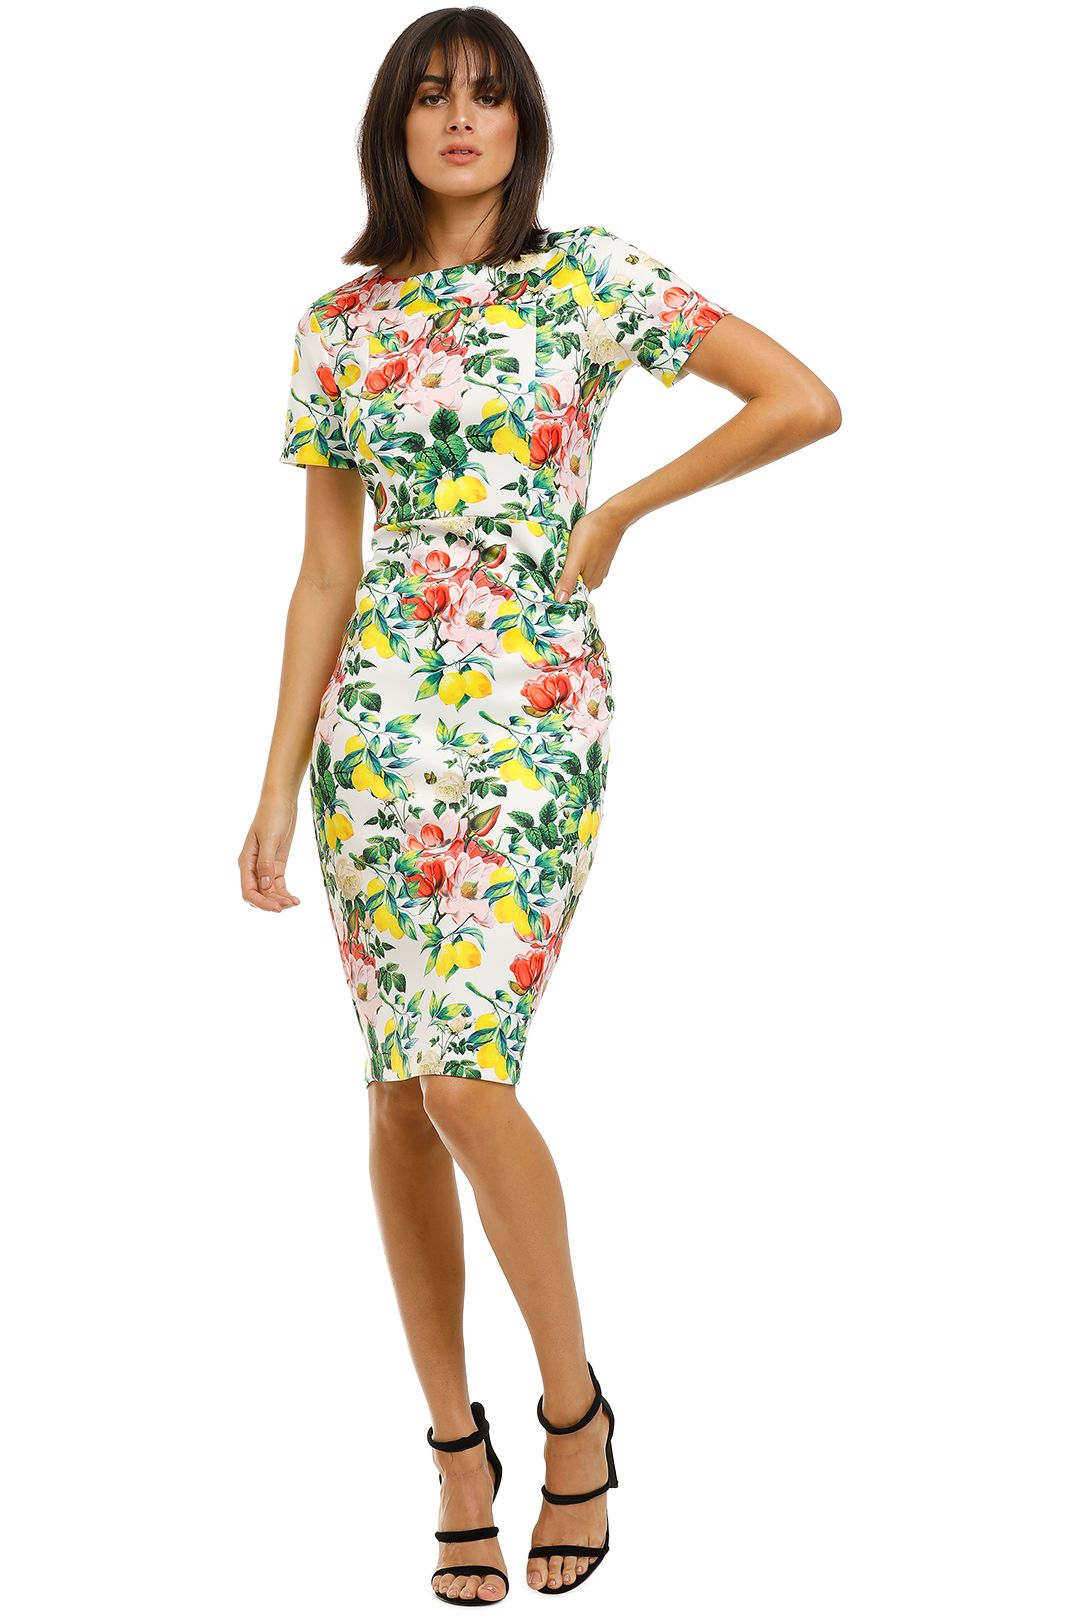 Alexia-Admor-Scuba-Sheath-Dress-Lemon-Floral-Front